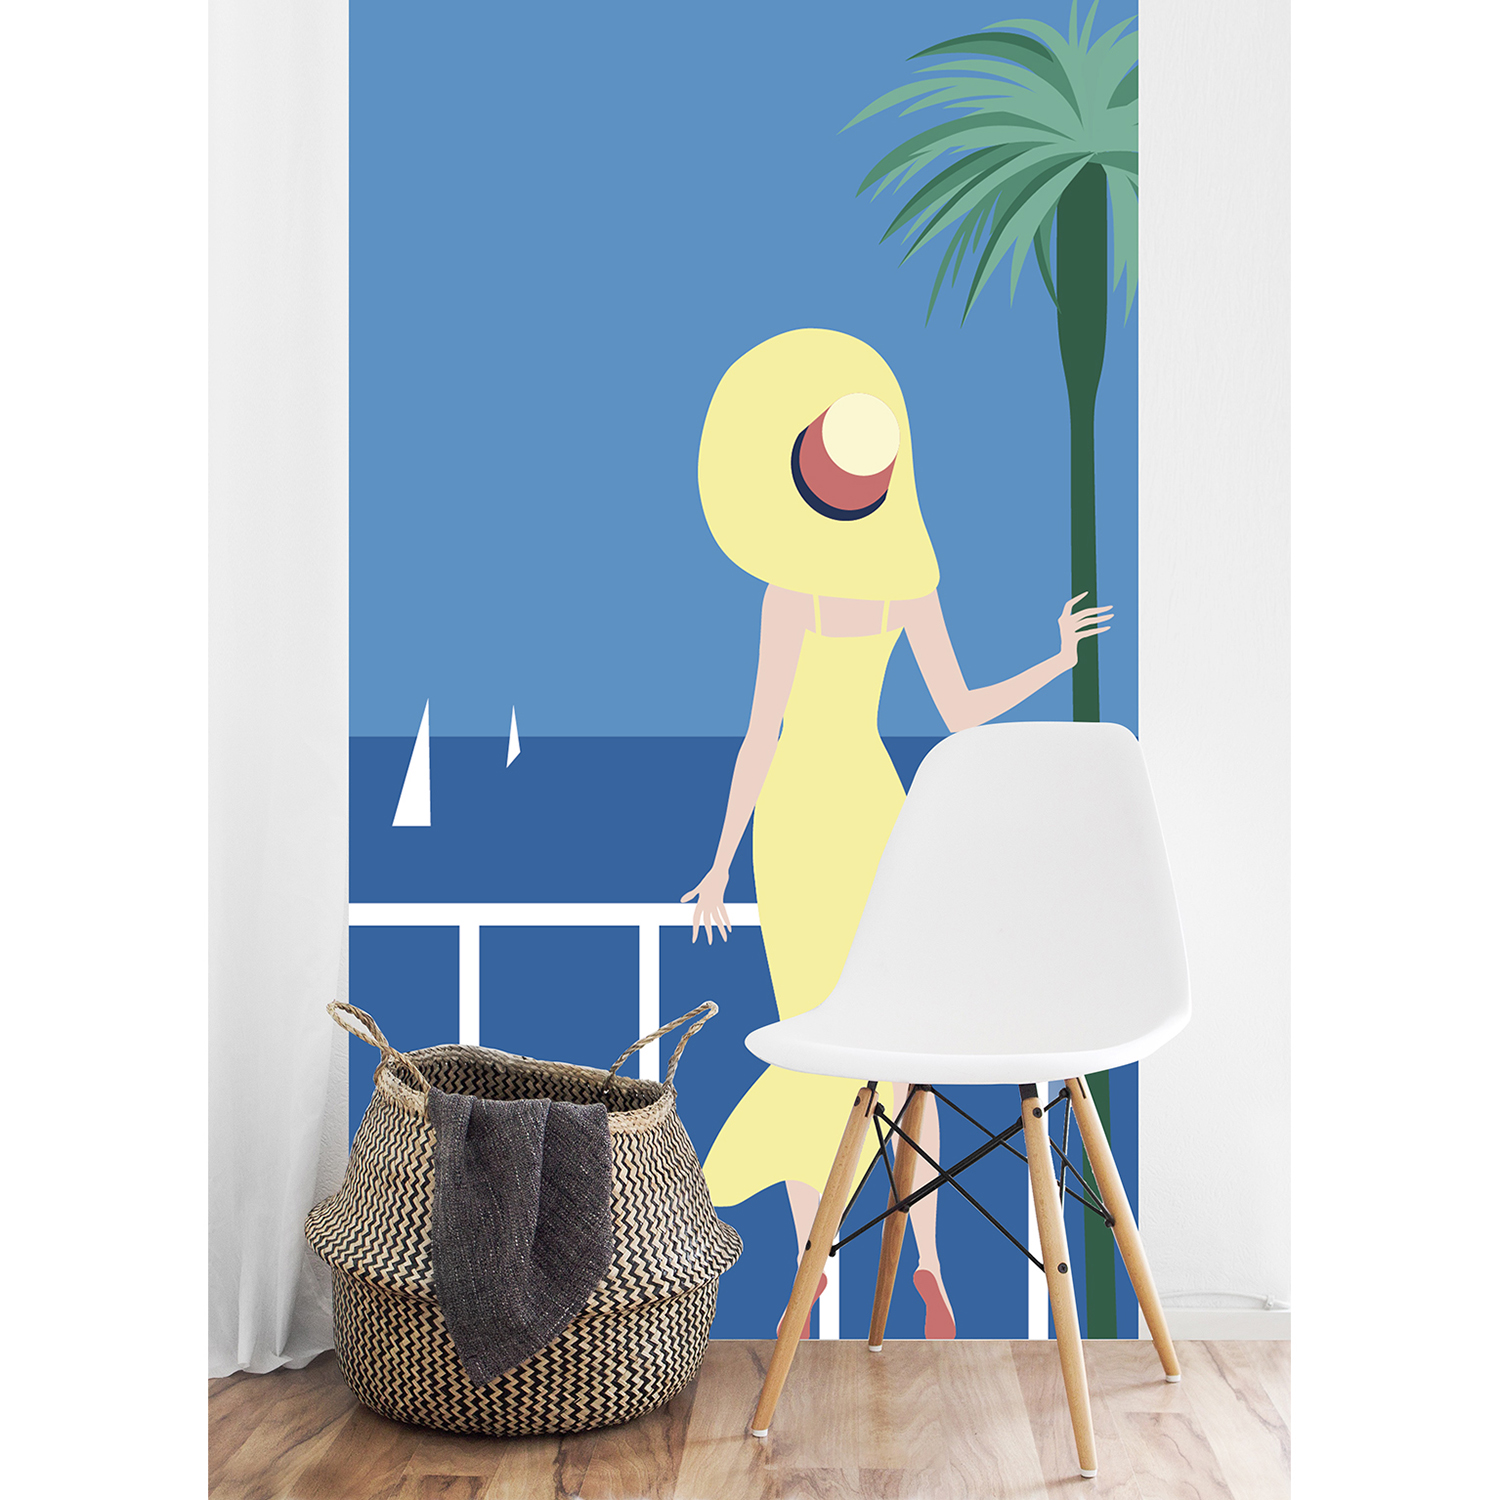 Poster géant en intissé, panoramique, facile à poser, ambiance estivale, bord de mer, dame à la robe et au chapeau aux couleurs du soleil regardant l’horizon, fond ciel et mer bleu azur, palmier et voiliers.